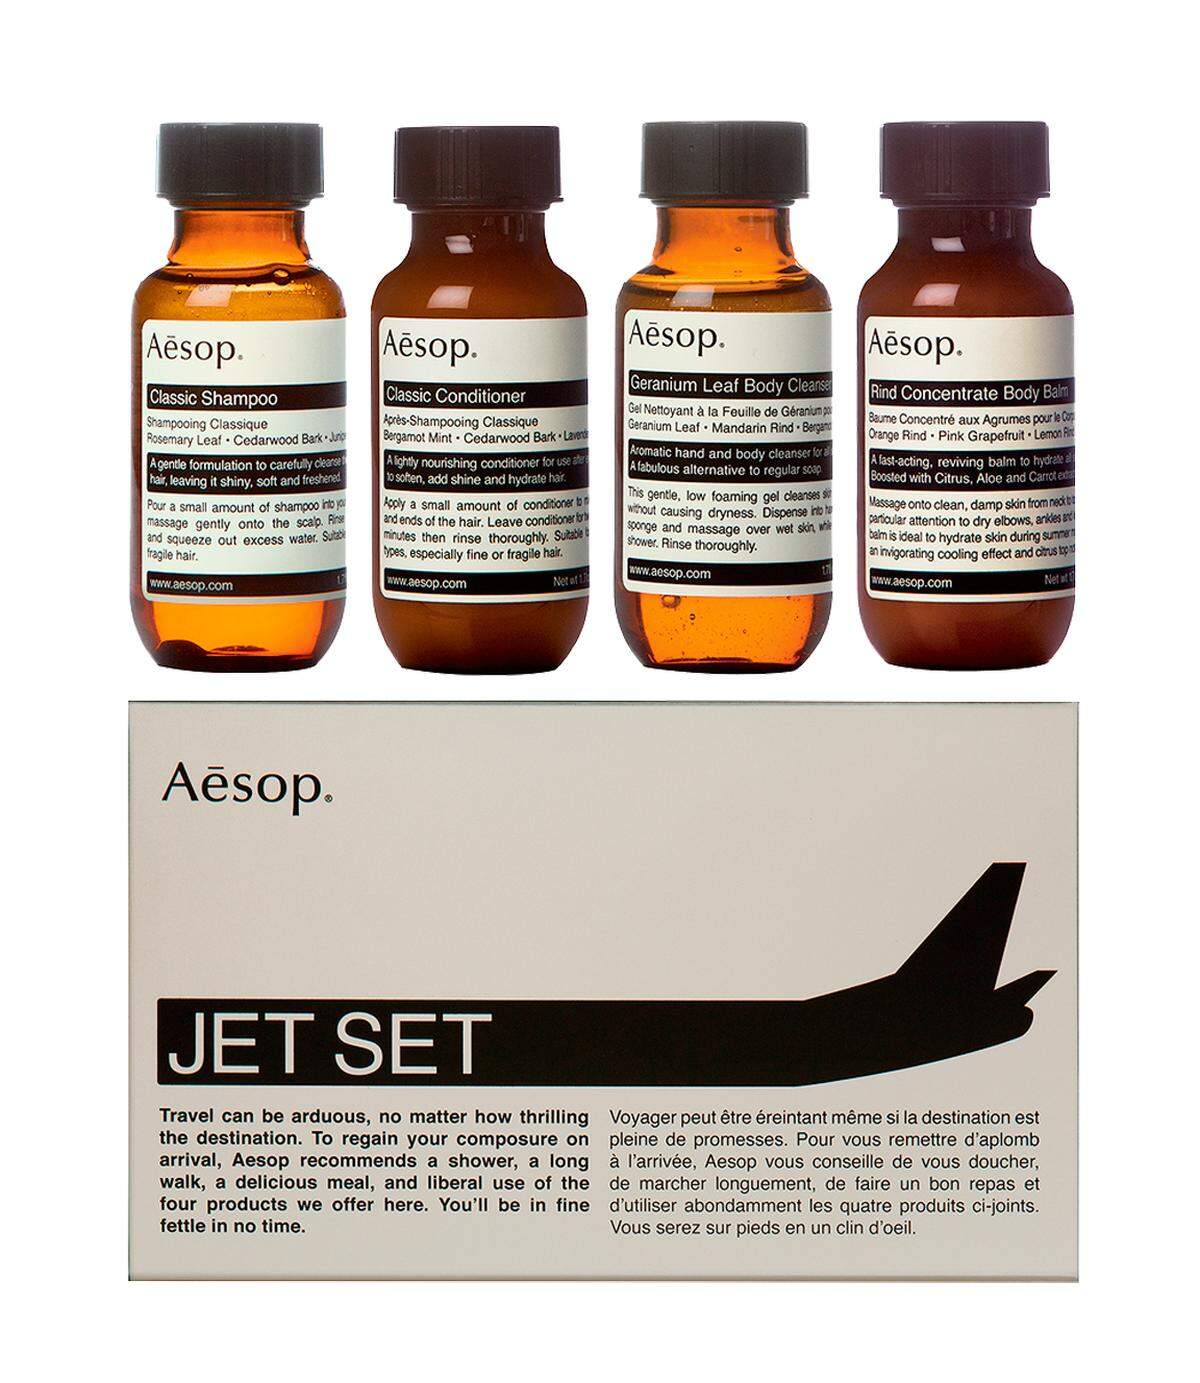 Reisefieber. Ein „Jet Set“ für Flugreisende von der hippen Naturkosmetikmarke Aesop, mit Shampoo, Conditioner, Wasch- und Bodylotion, um 33 Euro via www.aesop.com.